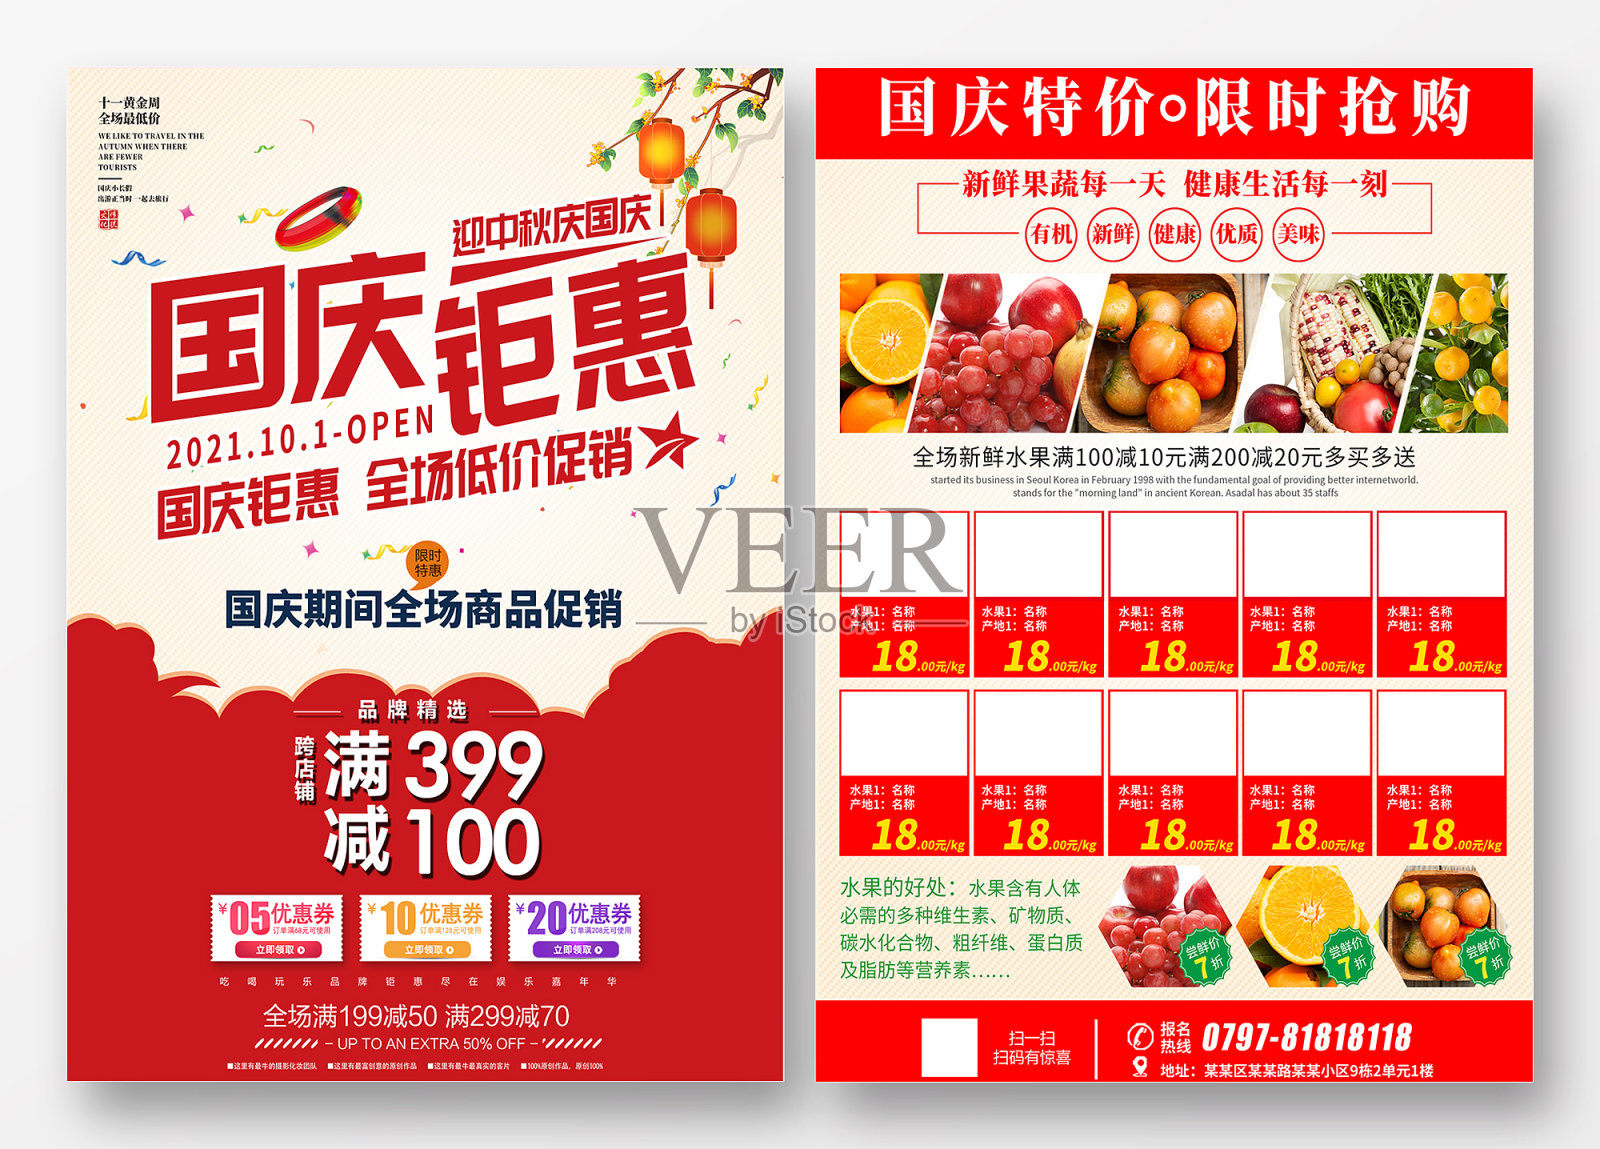 简约国庆节超市促销宣传单设计模板素材